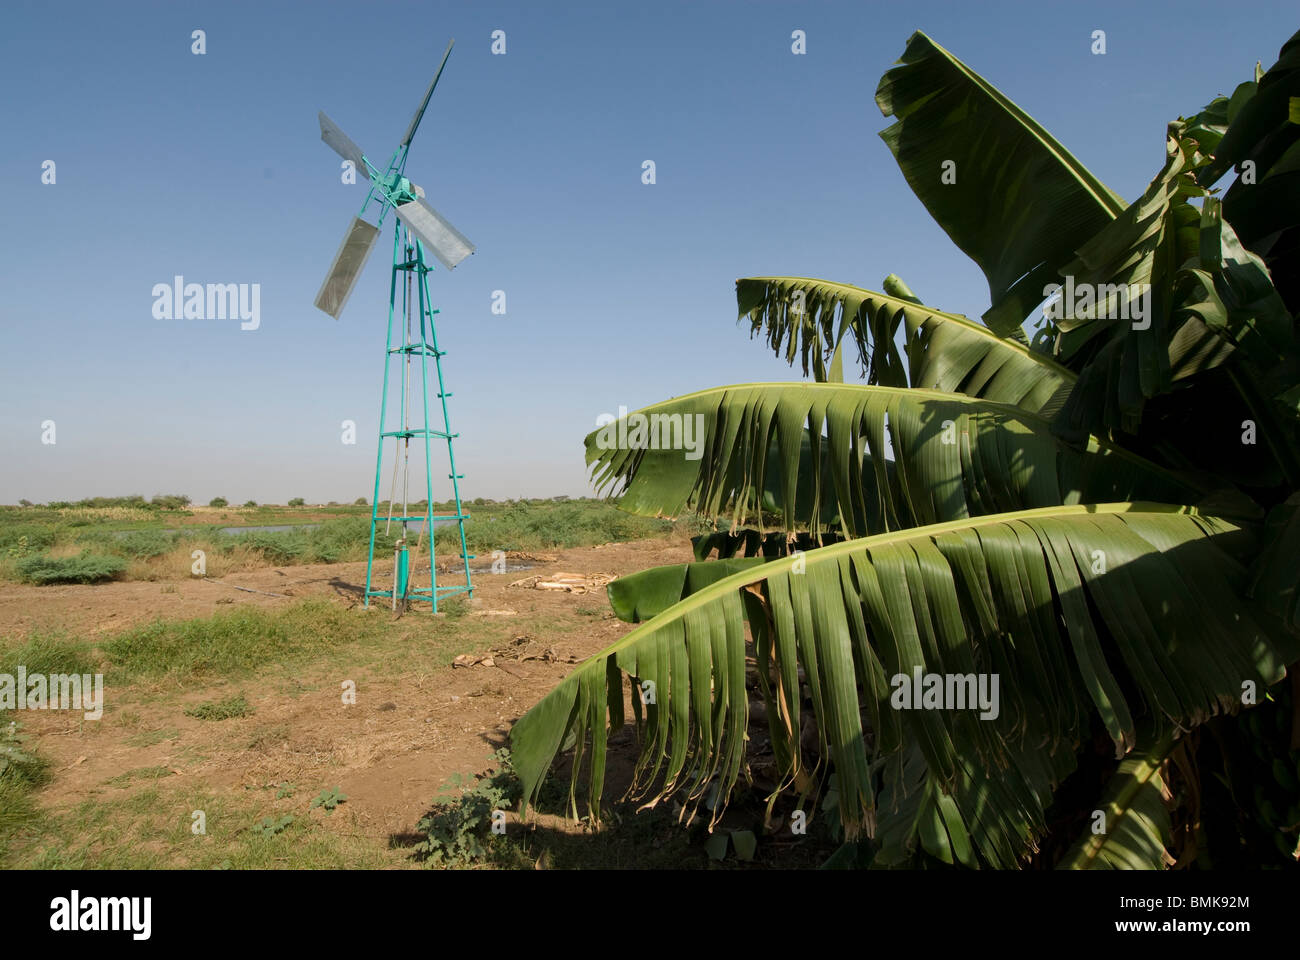 Used for irrigation immagini e fotografie stock ad alta risoluzione - Alamy